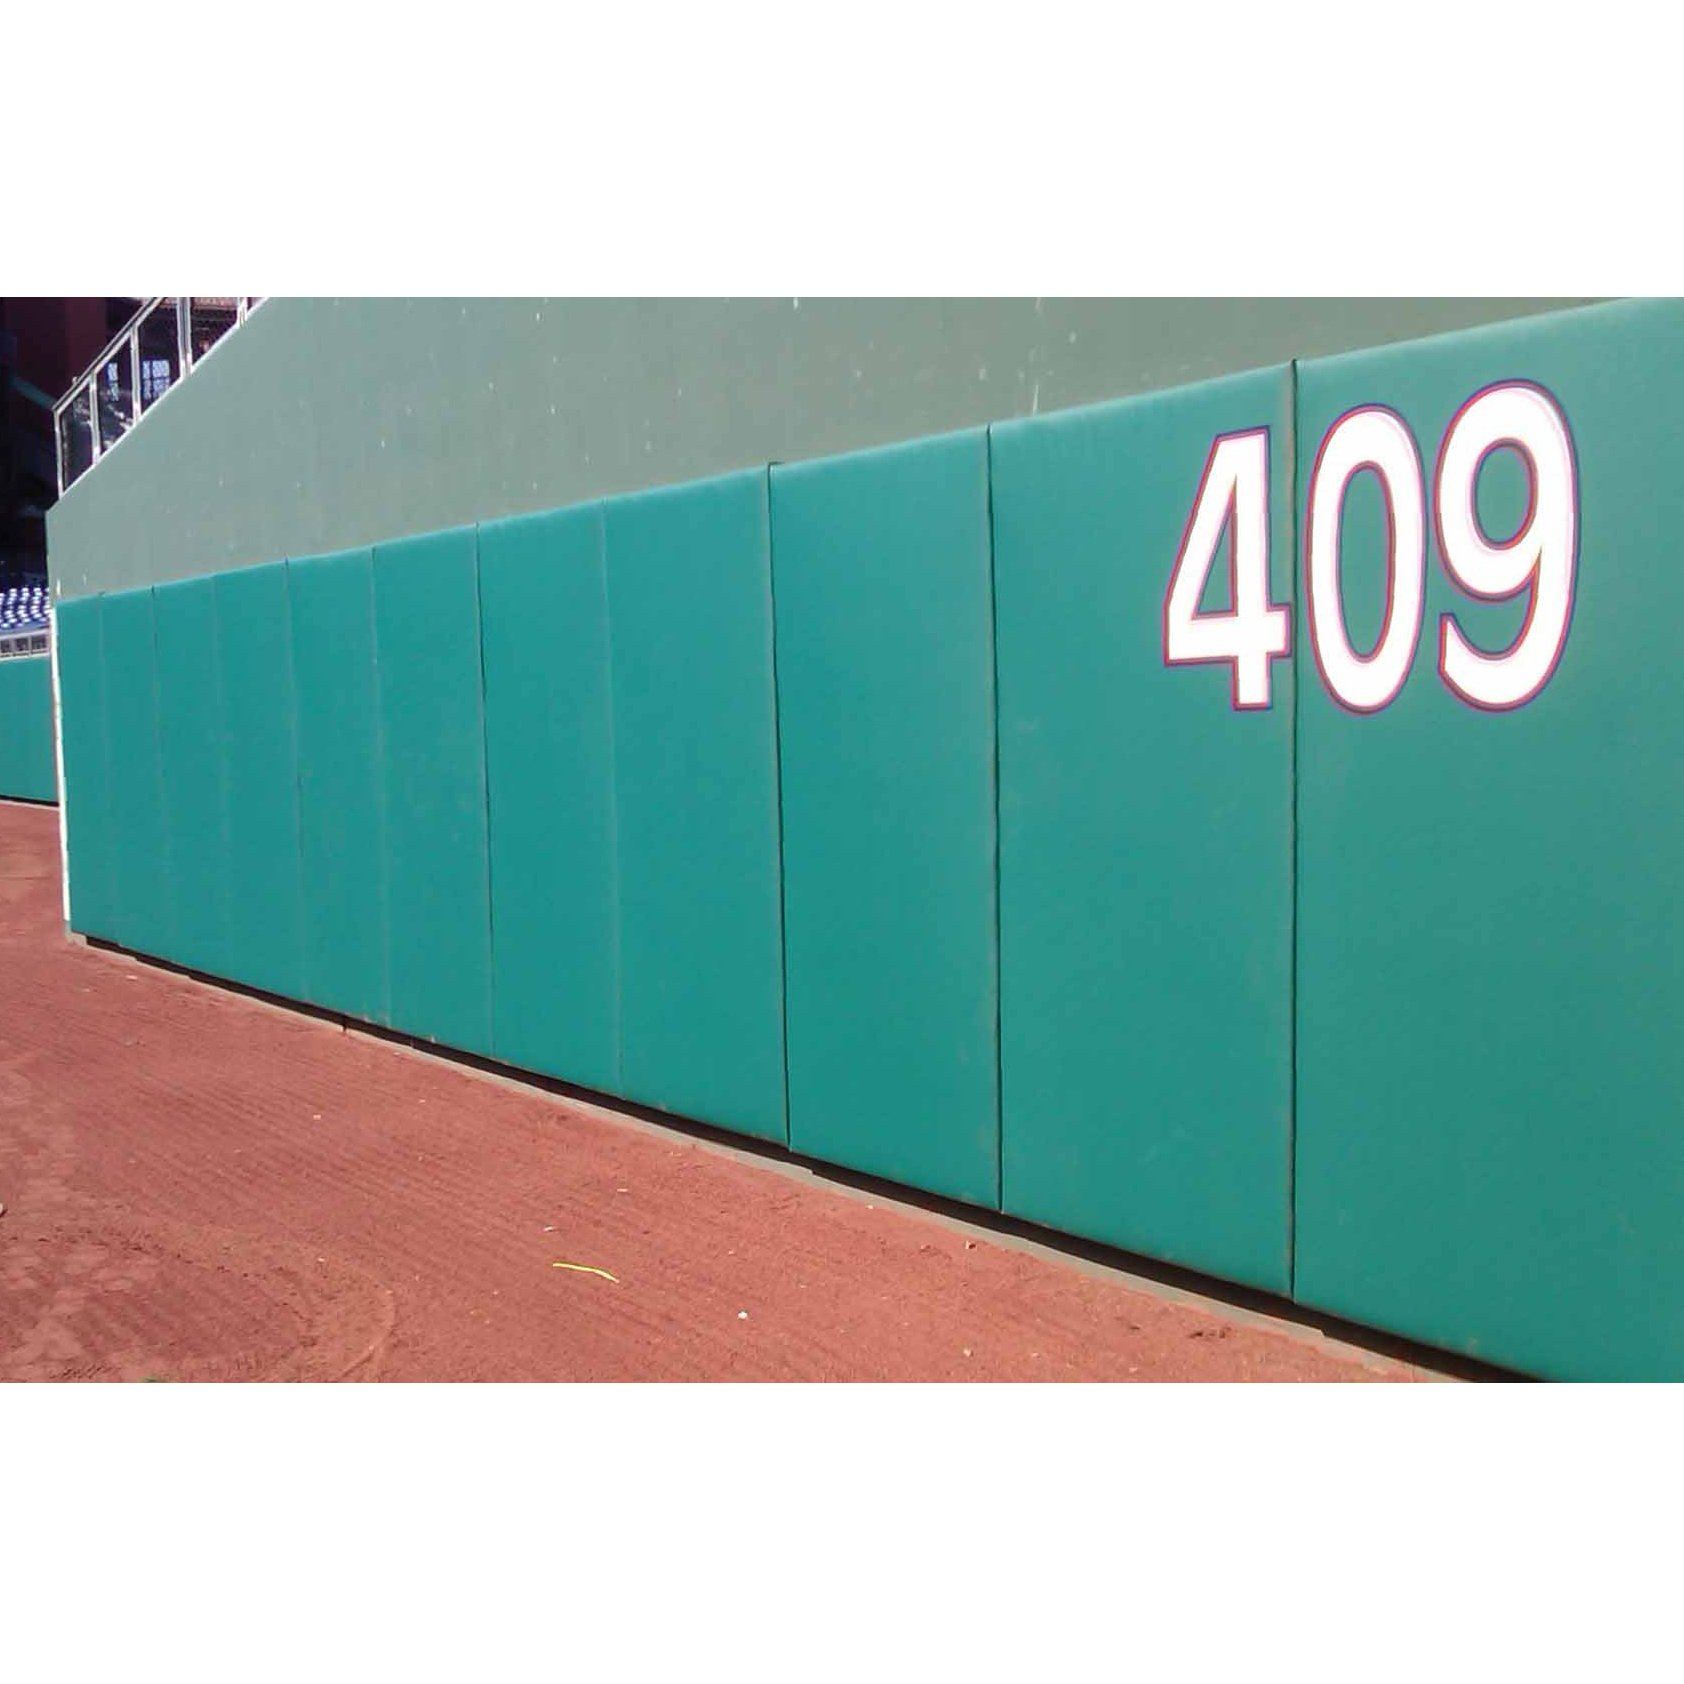 Outfield Wall Padding, Baseball Stadium Padding